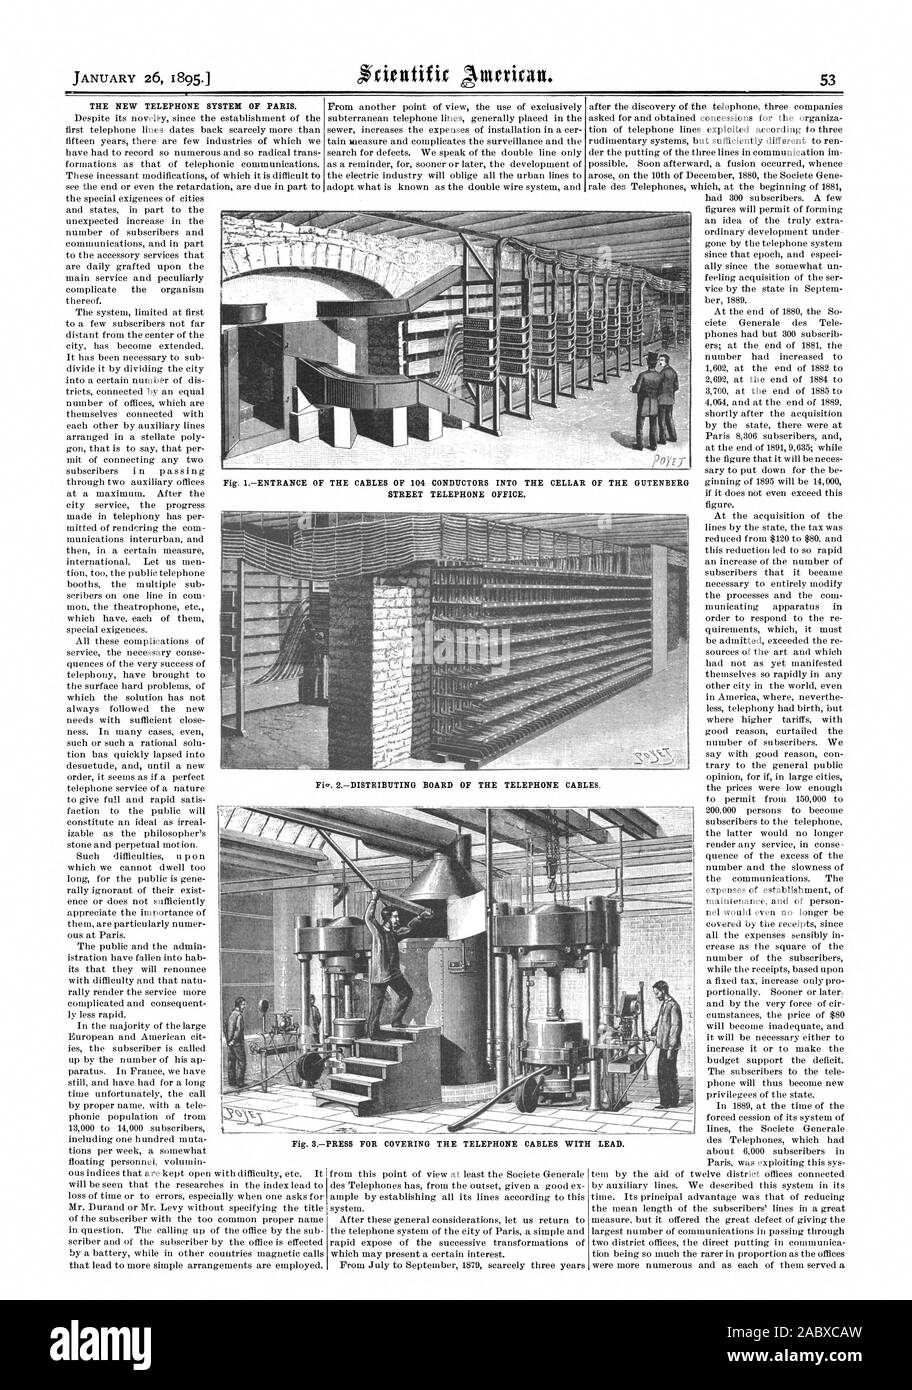 El nuevo sistema de teléfono de París. Fig. 3 Pulse para cubrir los cables telefónicos con plomo., Scientific American, 1895-01-26 Foto de stock